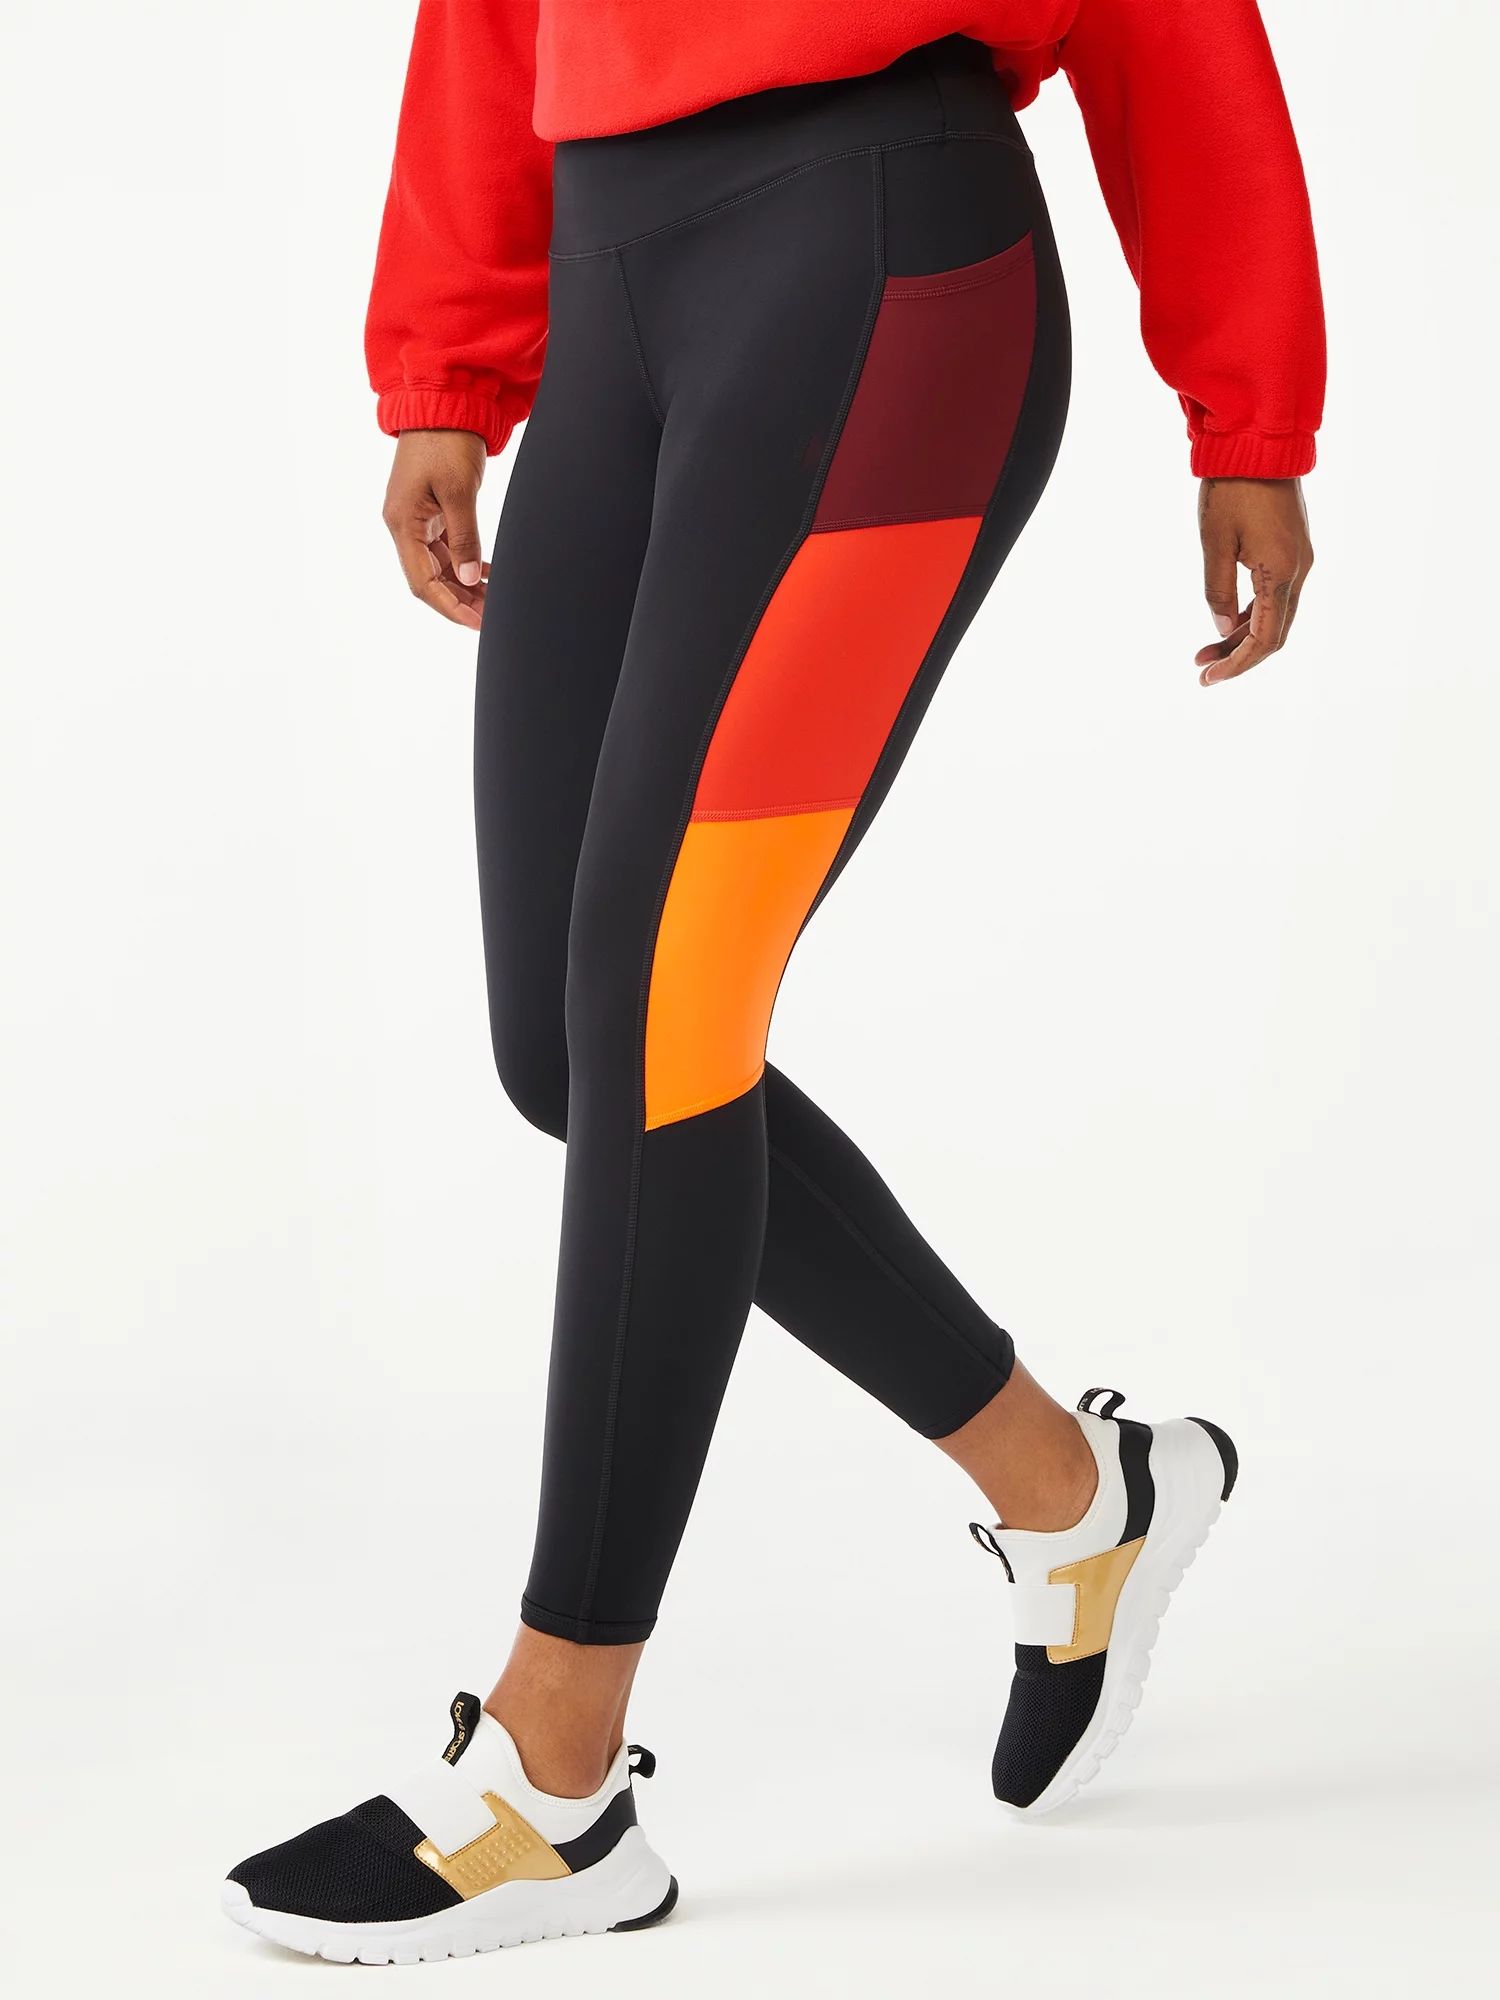 Love & Sports Women's Colorblocked Leggings | Walmart (US)